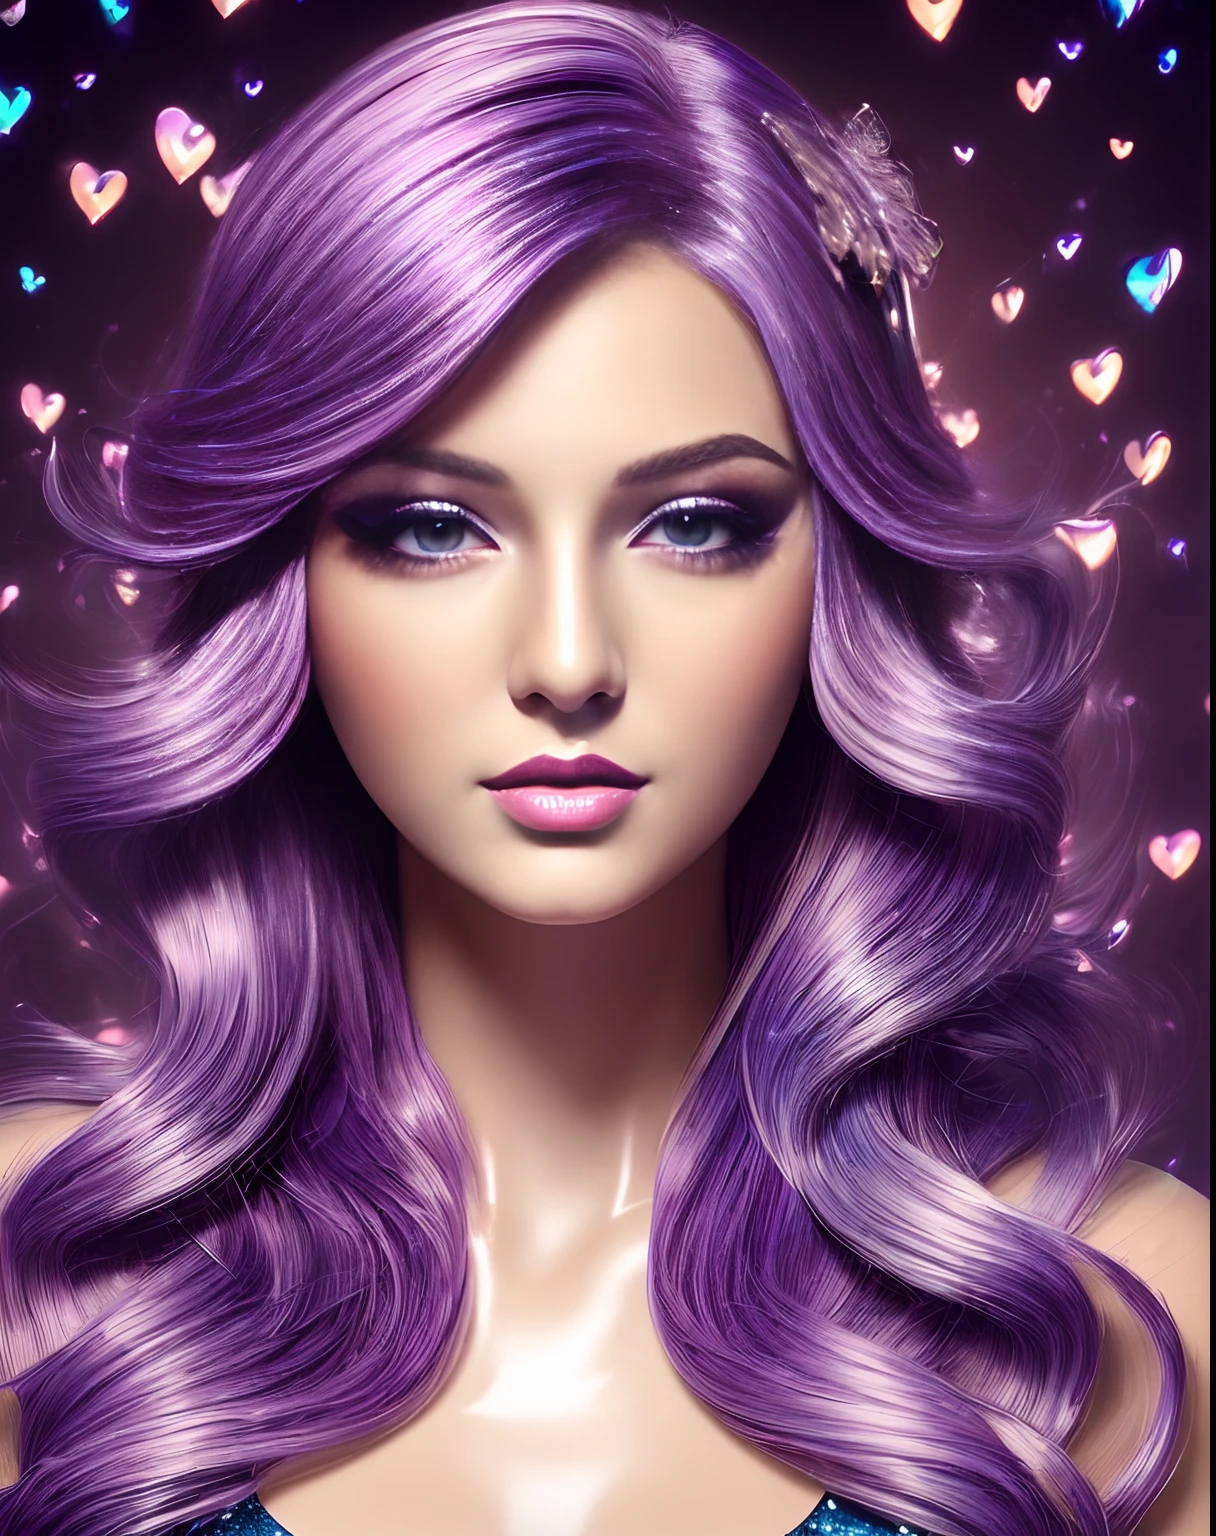 (傑作, 最高品質, 光沢のある, 美しいデジタルアート:1.4), (魅力的な21歳の女性:1.6), 色彩豊かな夢, 閉じる, 紫色の髪, (補う:1.3), (super 光沢のある:1.3), 超詳細, 非常に複雑な, 壁紙, 8k